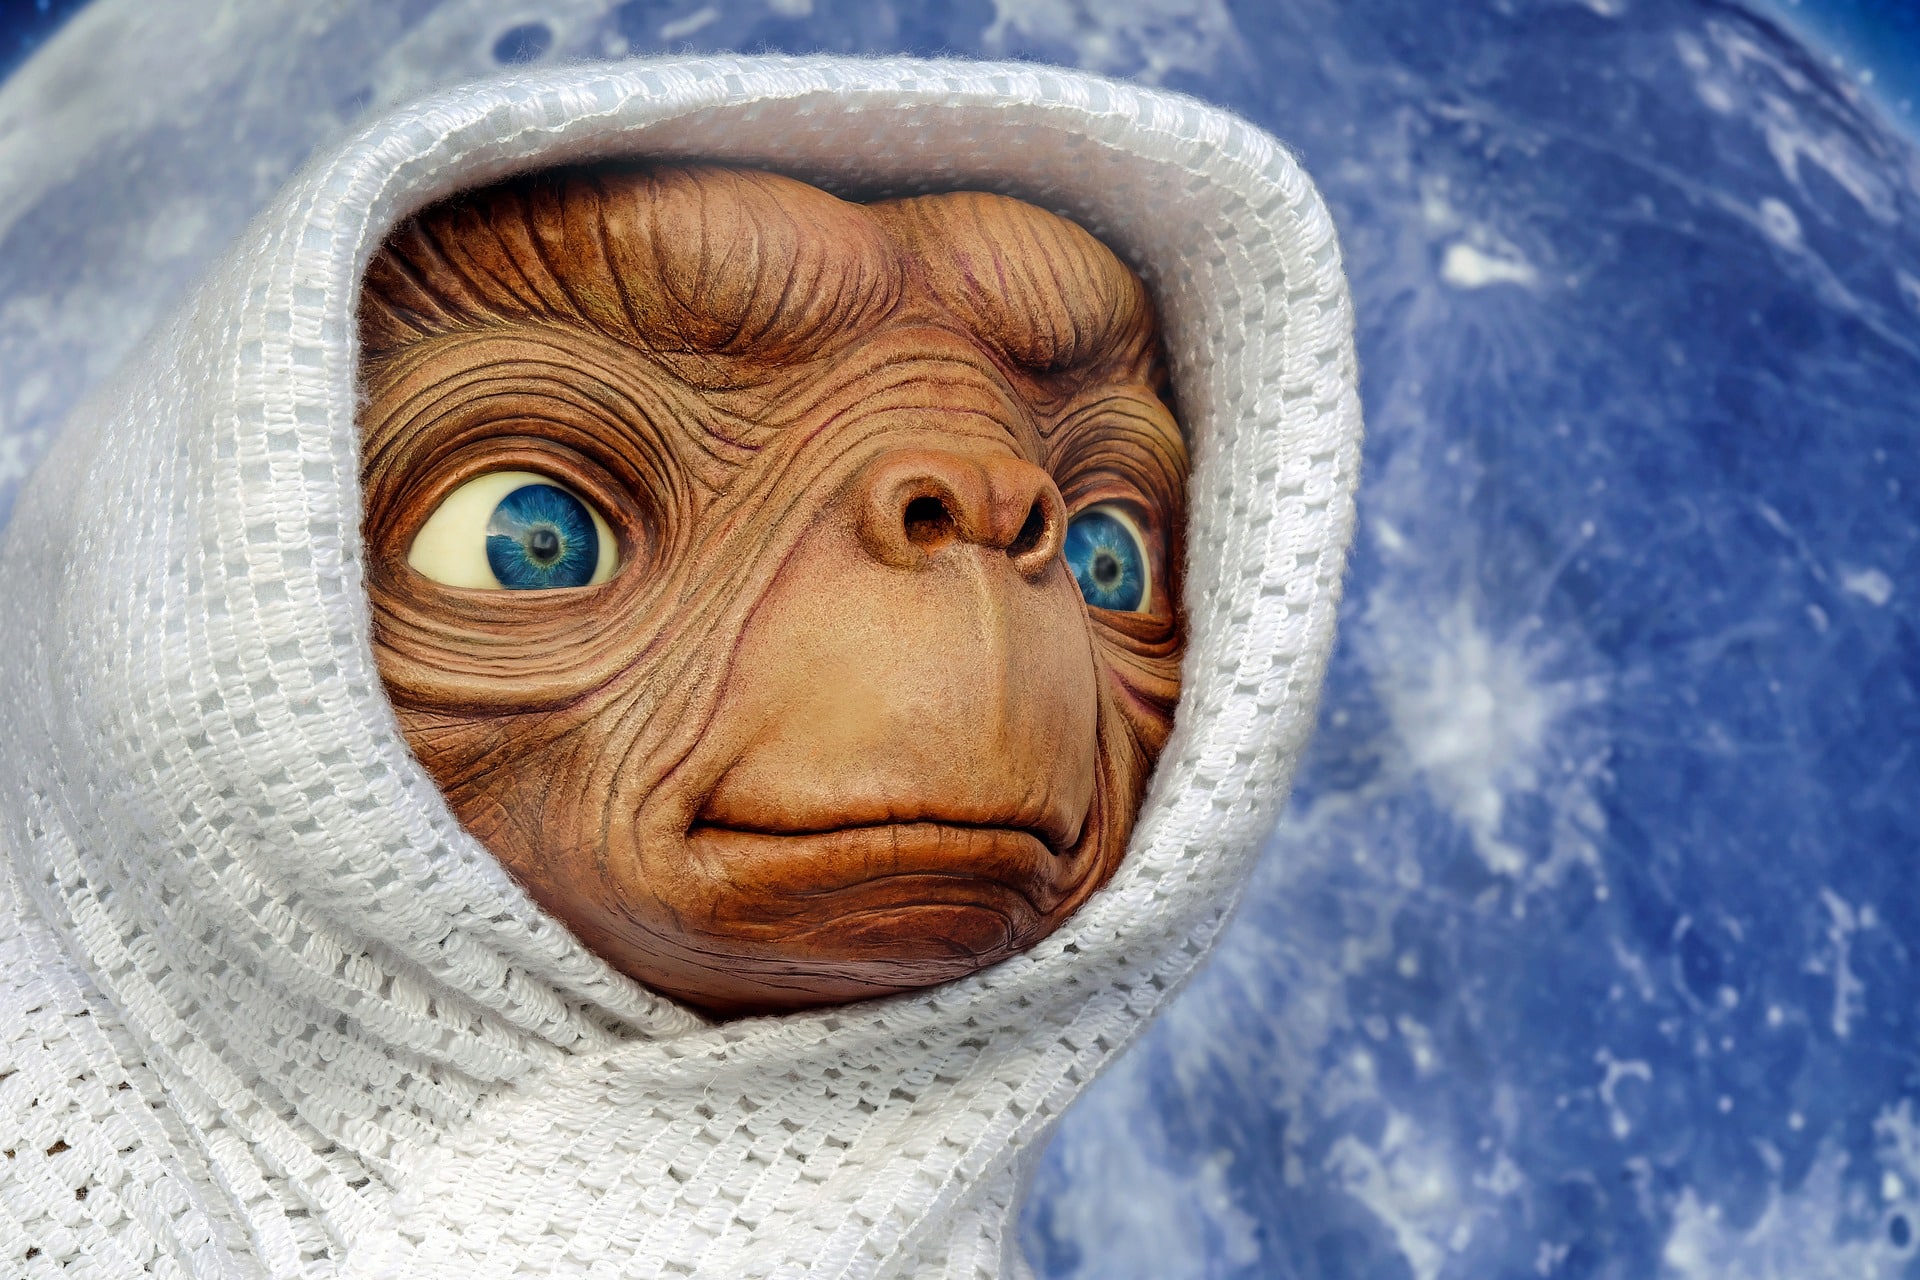 E.T. L'extra-terrestre - Transmettre le cinéma